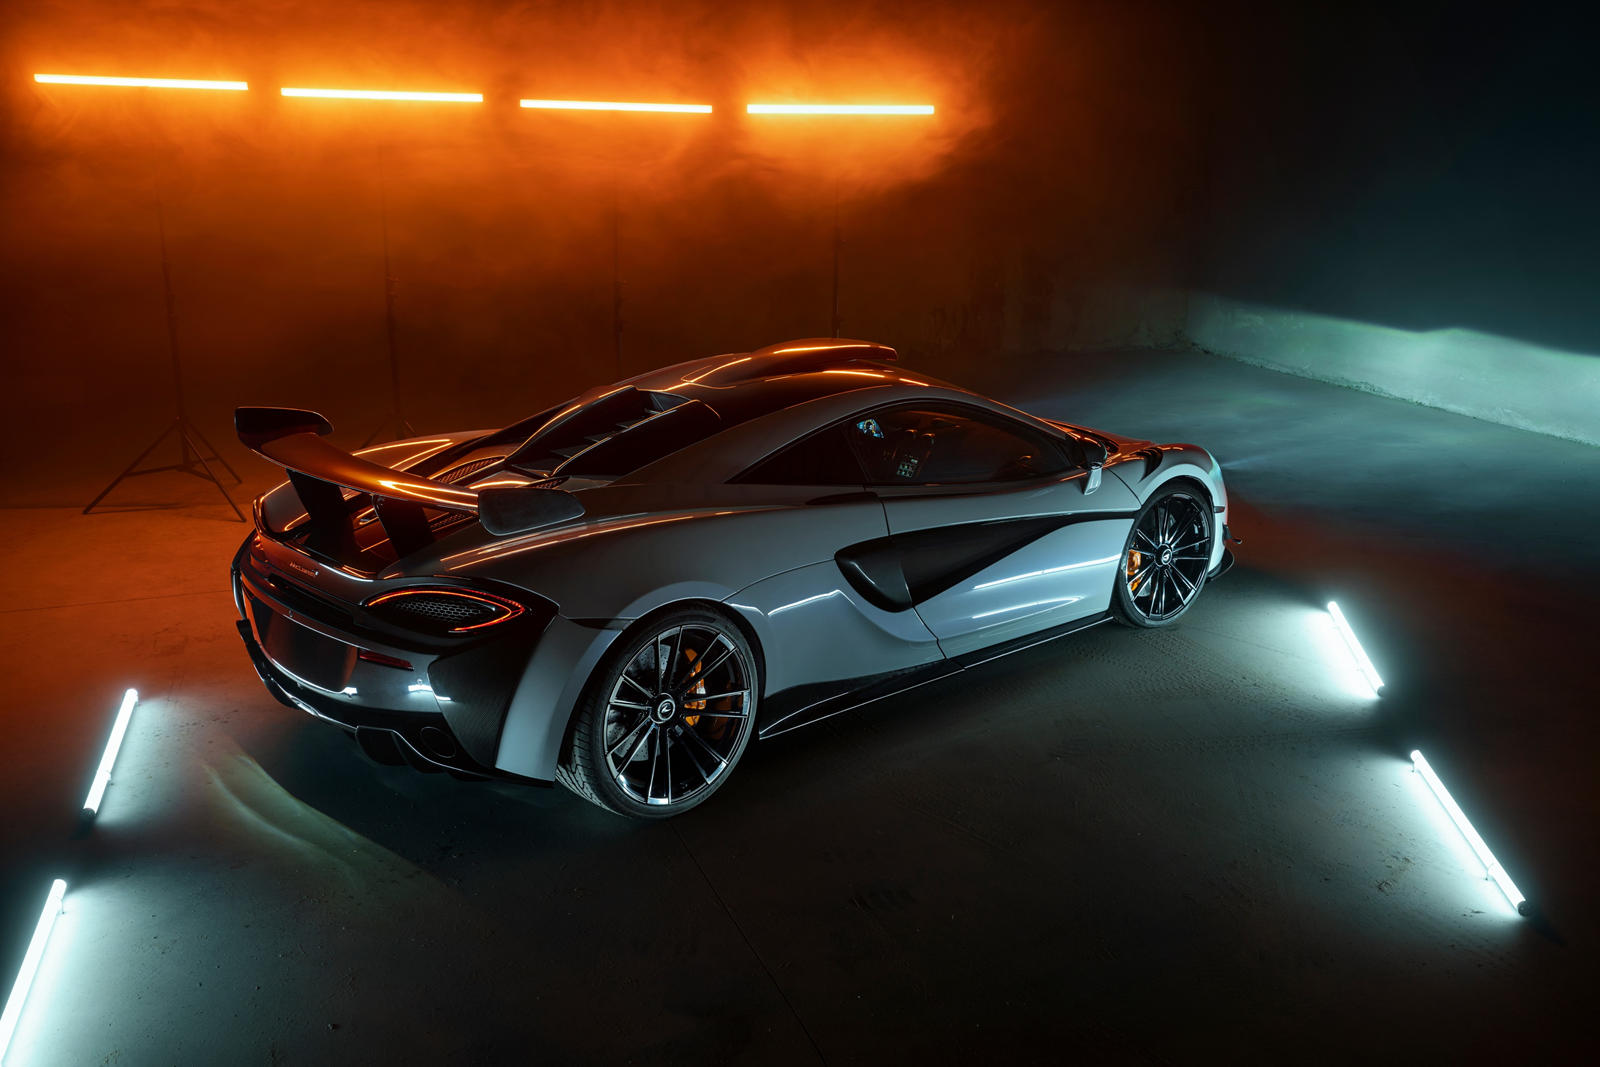 Представленный в прошлом году McLaren 620R по сути является дорожной версией успешного гоночного автомобиля 570S GT4. С более легким кузовом, вдохновленным гонками, чем 600LT, и 3,8-литровым двигателем V8 с двойным турбонаддувом мощностью 610 лошадин